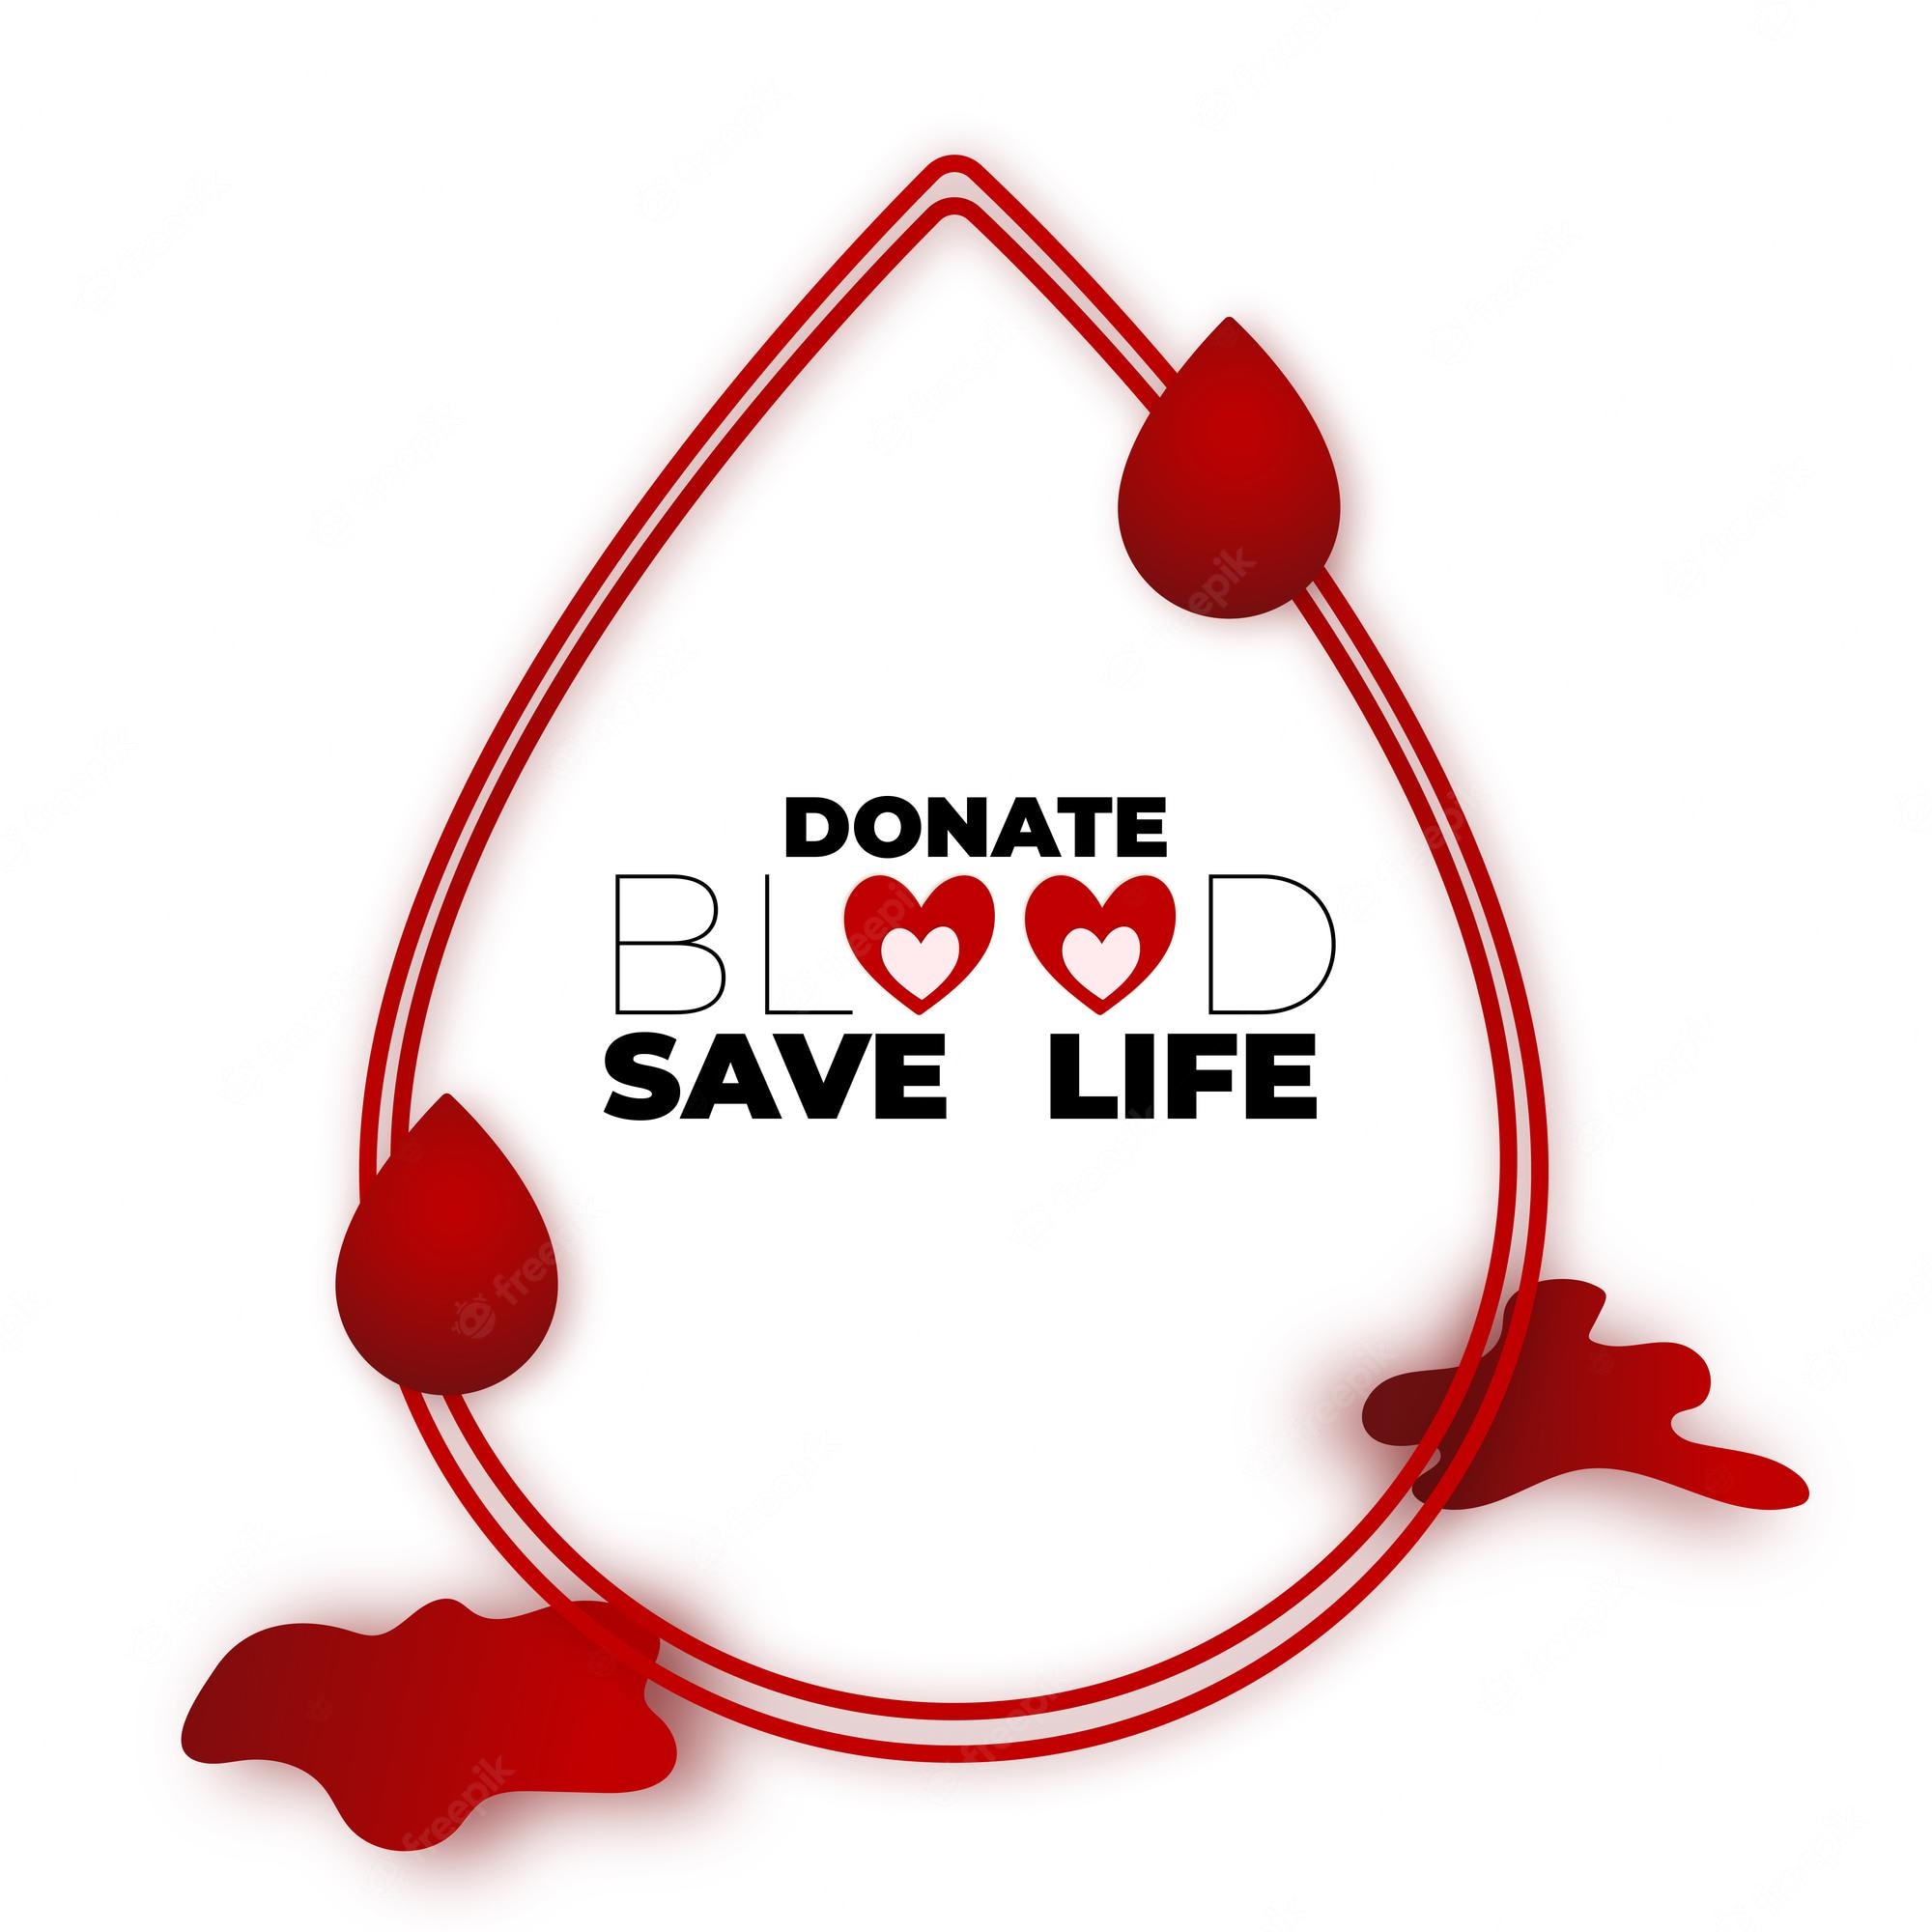 Blood Donation Background Image